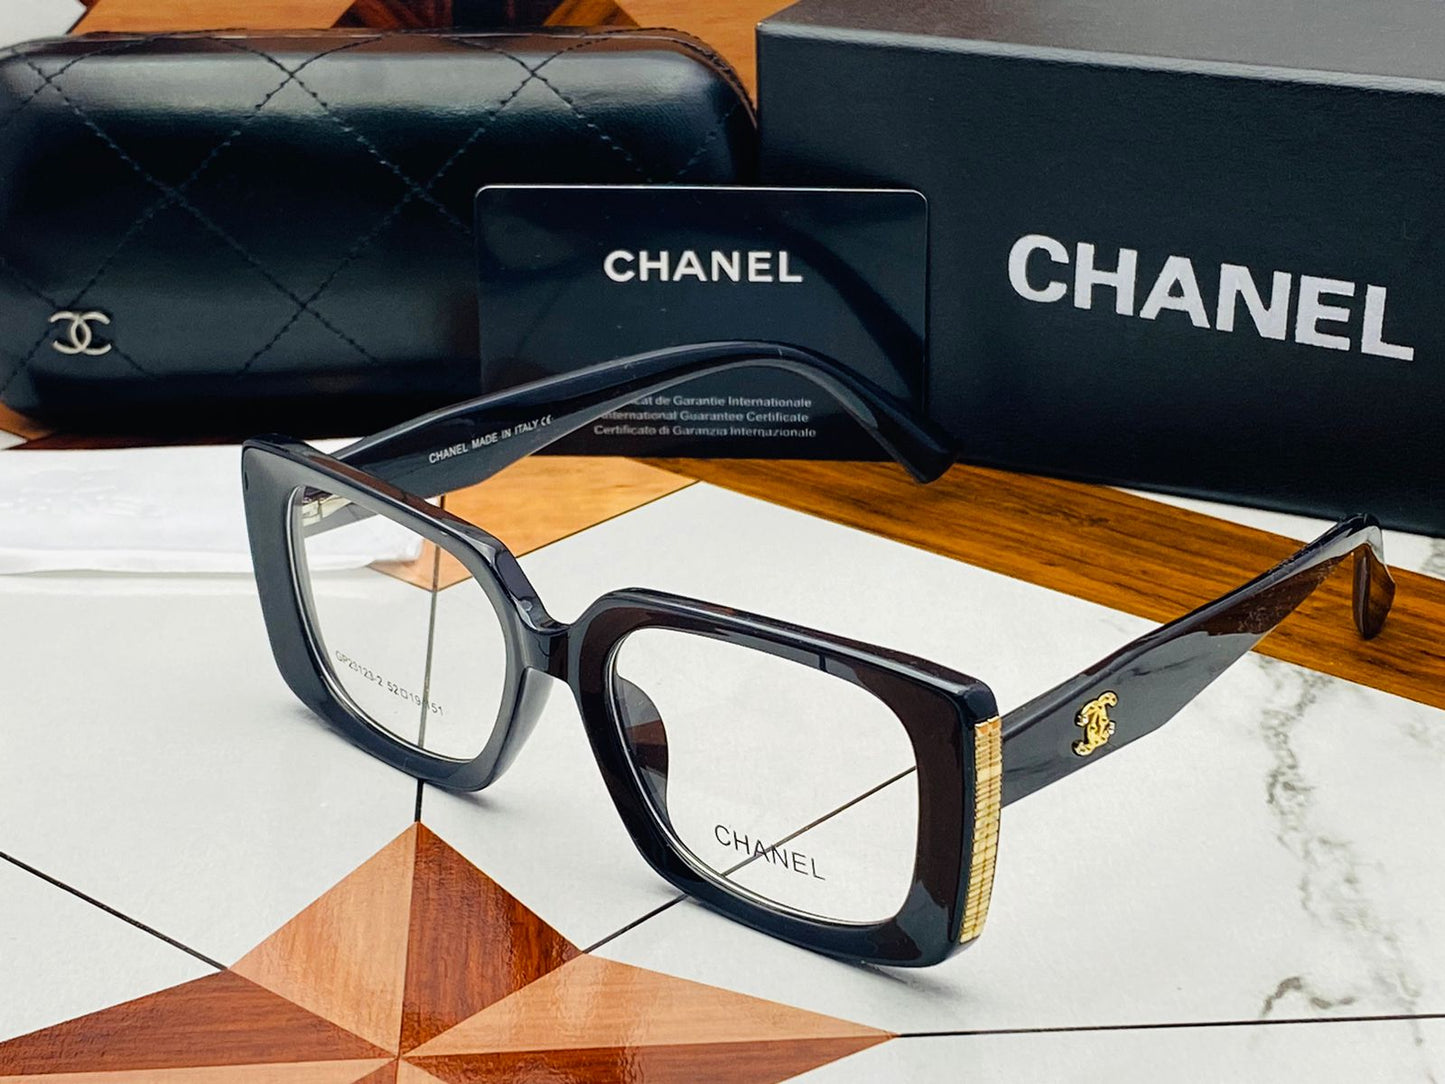 Chanel x Ferragama Demanded ☝️